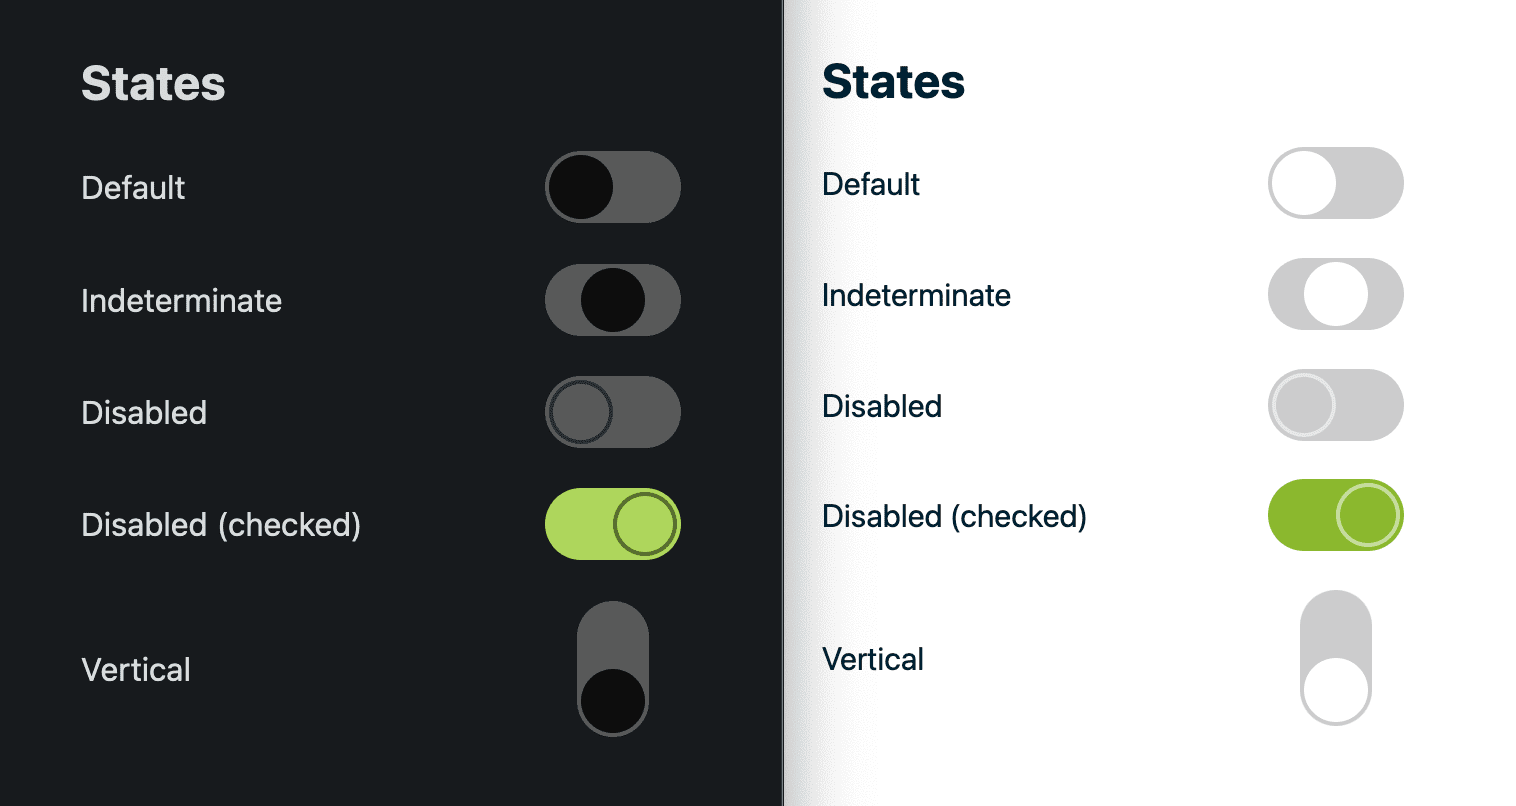 Ein Vergleich des hellen und des dunklen Designs für den Schalter und seine Status.